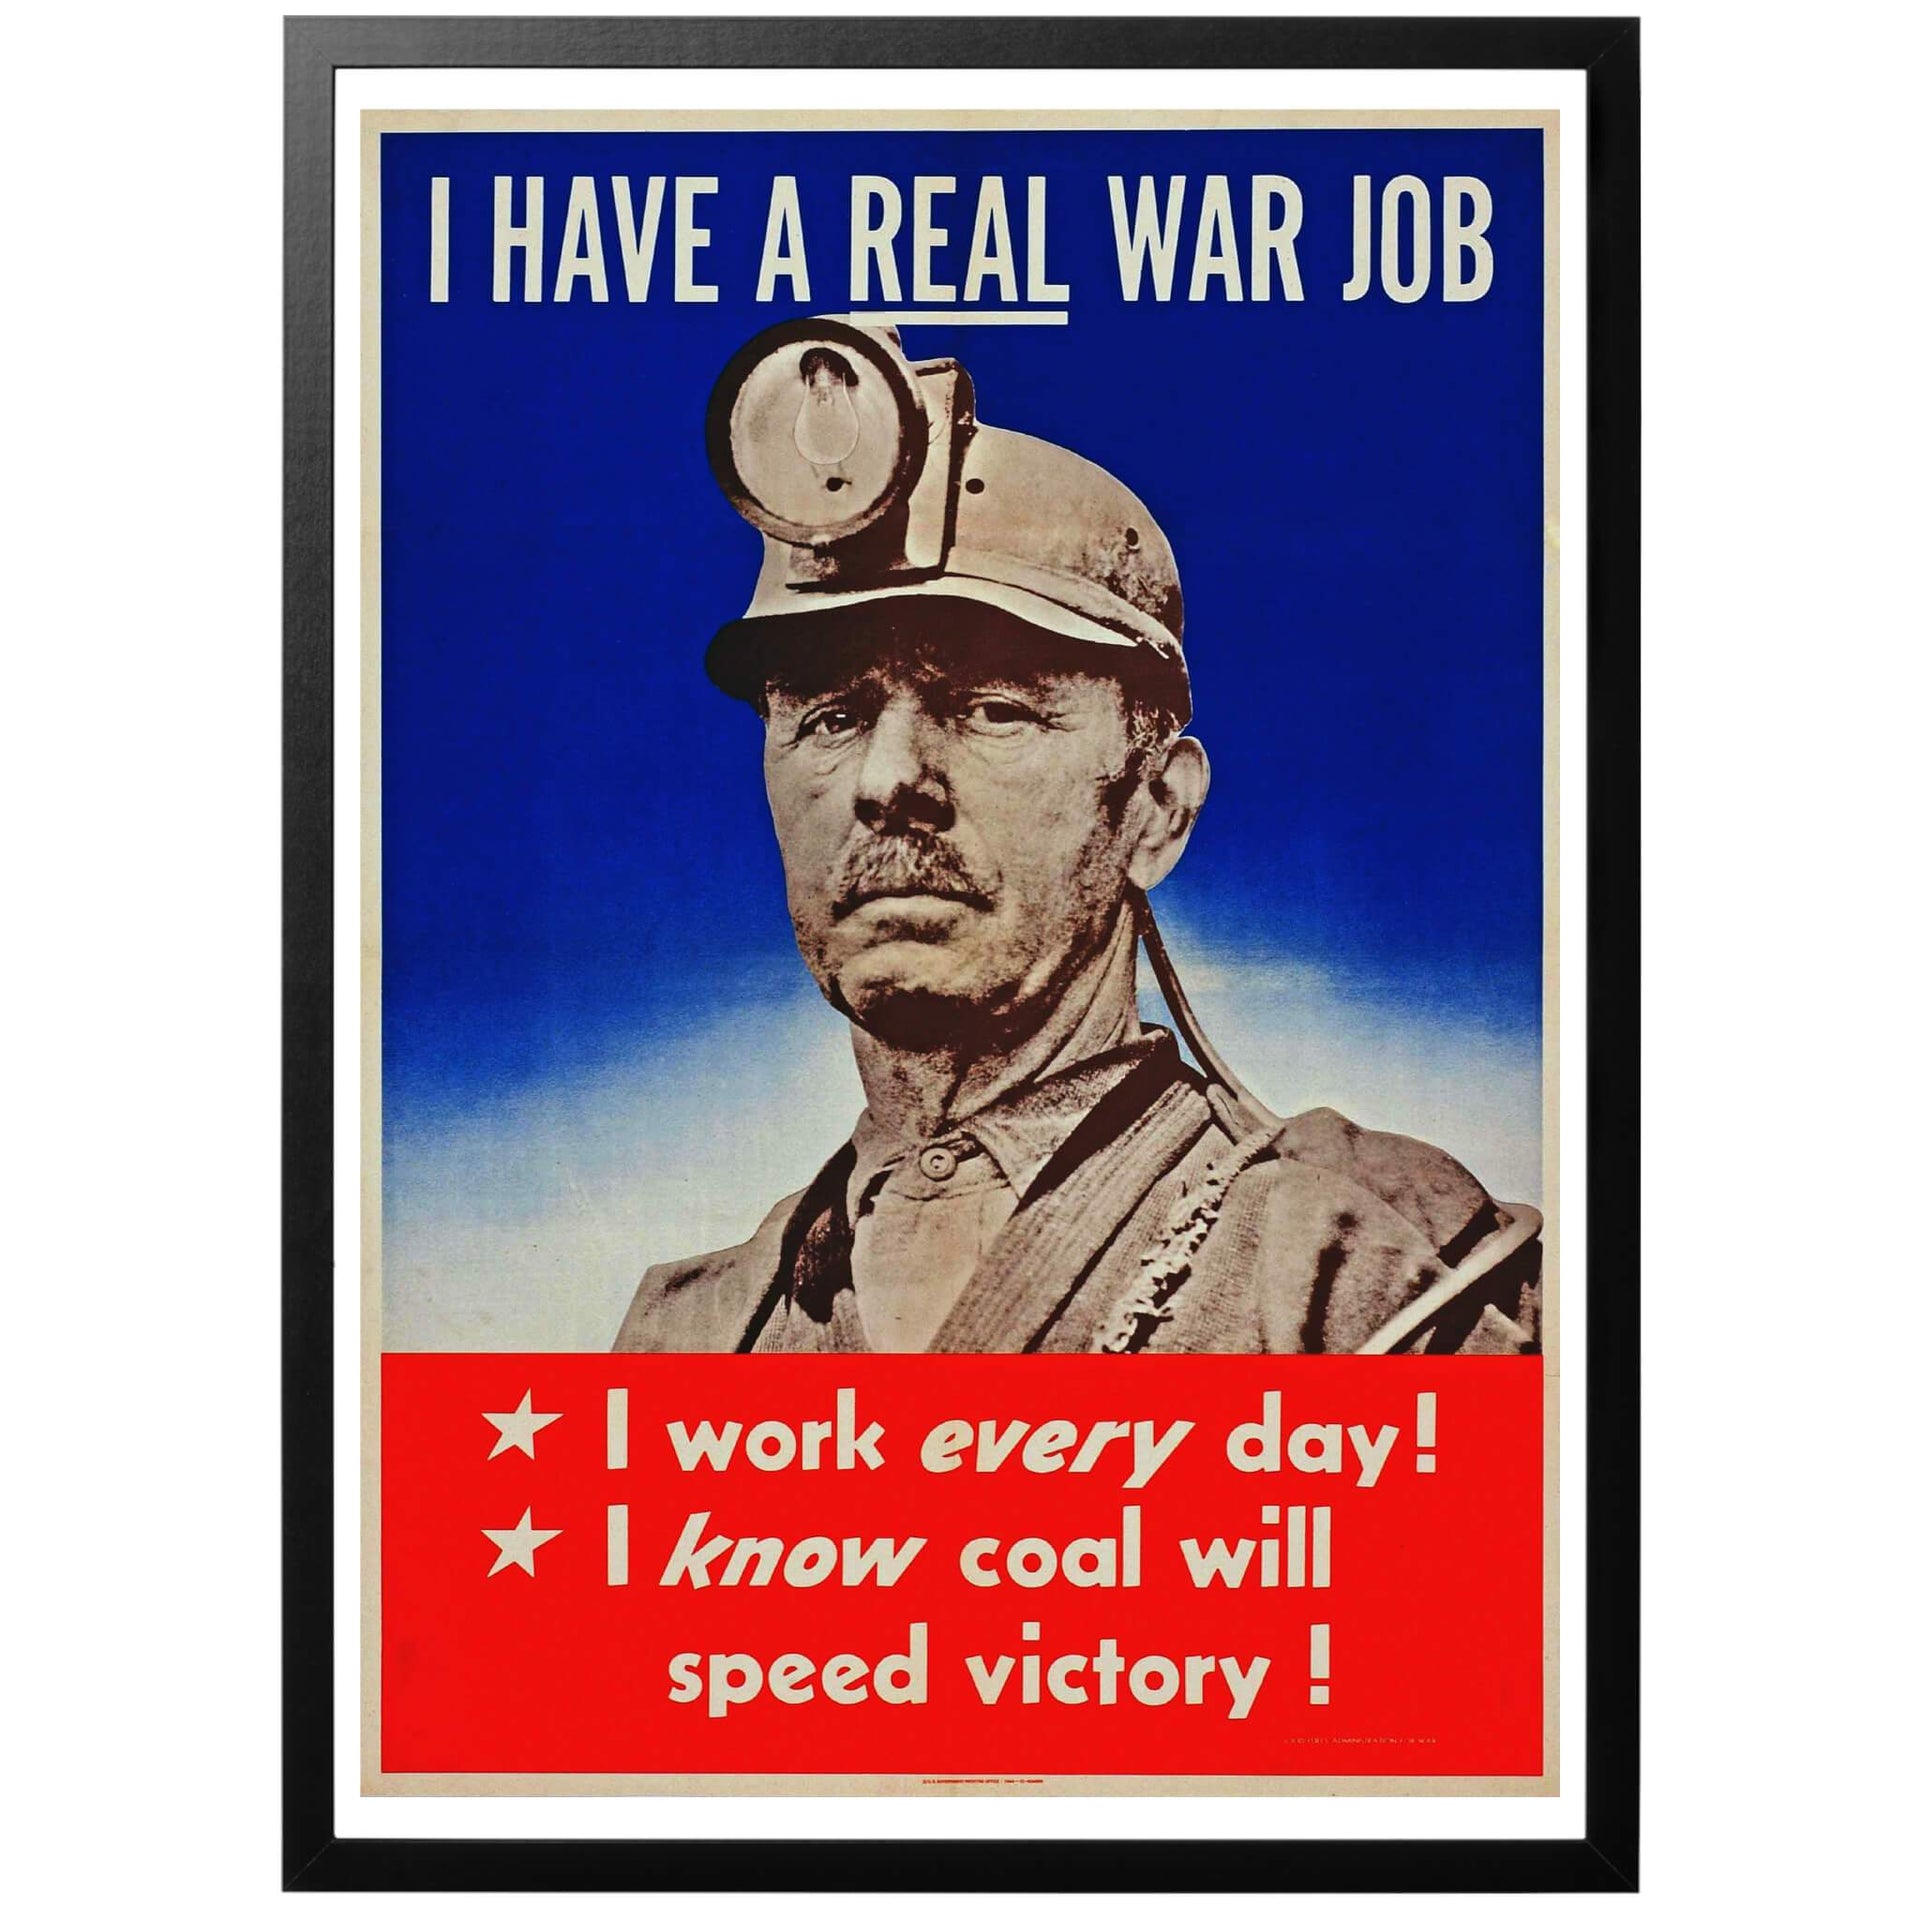 I Have a Real War Job - Jag har ett riktigt krigsjobb -Amerikansk WWII affisch. En kolgruvarbetare som säger att:-Jag har ett riktigt "krigsjobb"-Jag arbetar varje dag!-Jag vet att att kol skyndar segern!  Frakt 59 kr inom Sverige - fri frakt från 450 kr! Snabb och smidig leverans med PostNord,